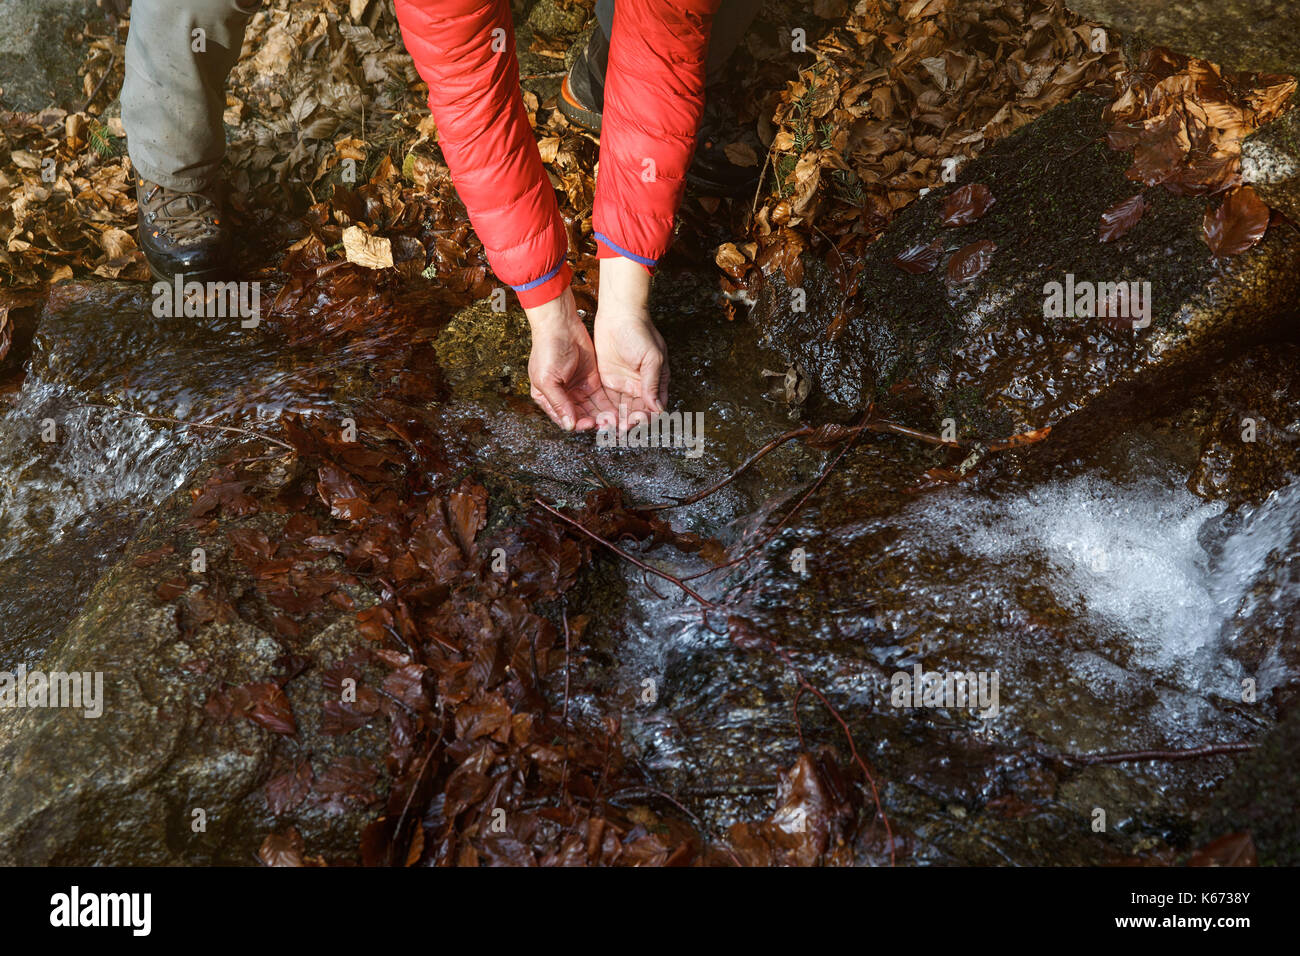 Assetato escursionista acqua potabile da un cristallo chiara stream in montagna. Adventure, il fondamentale diritto all'acqua, ritorno alla natura e uno stile di vita naturale Foto Stock